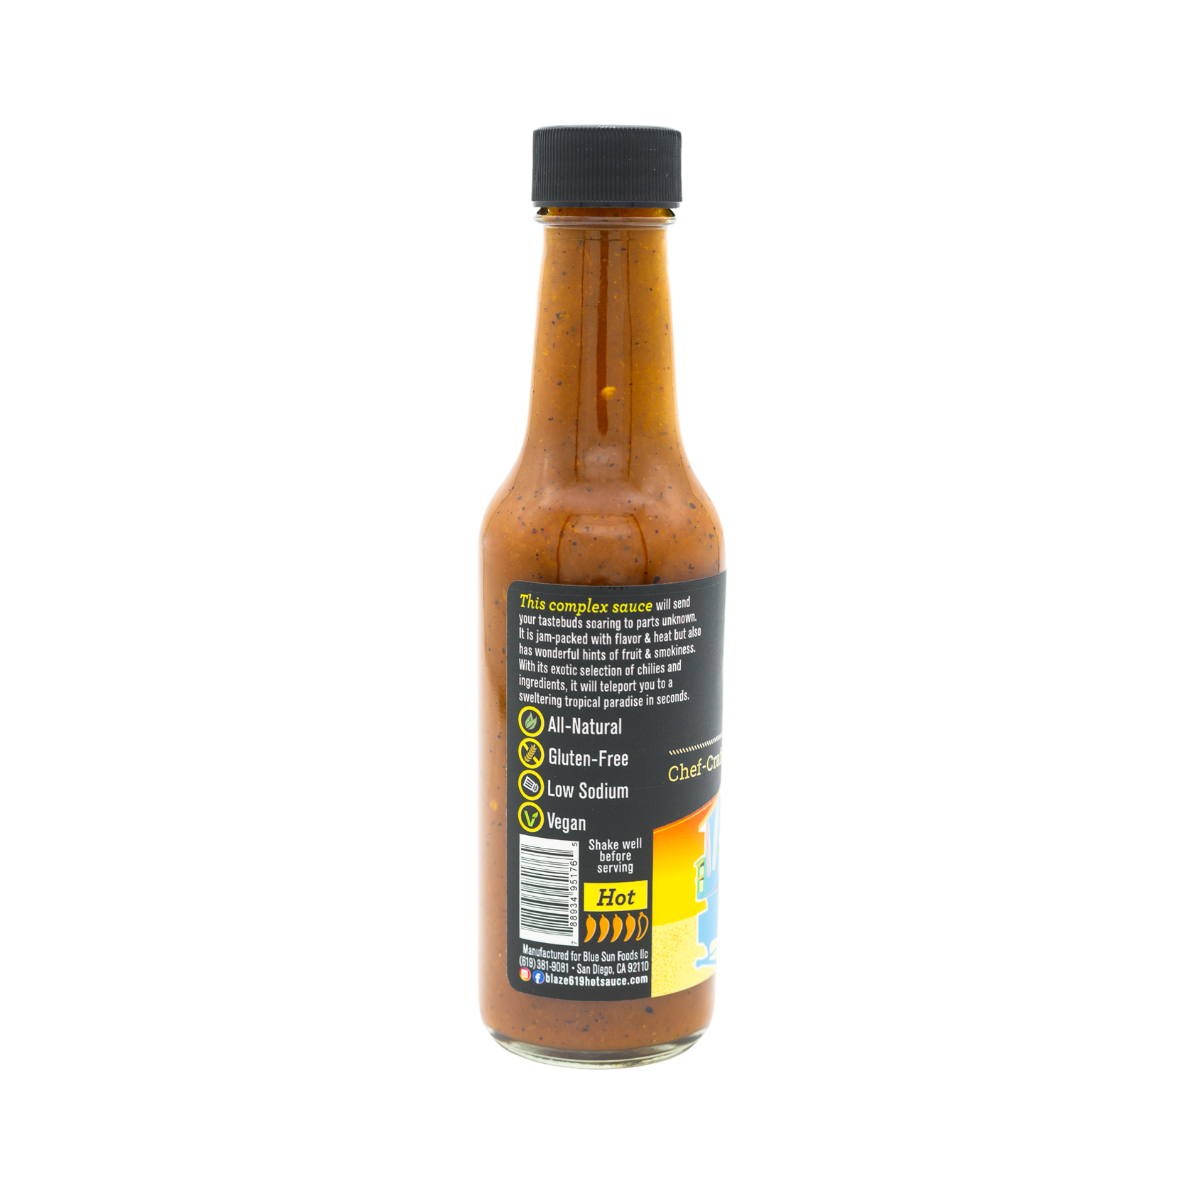 BLAZE 619 Mango Chili Hot Sauce - 5 oz. - Product Description